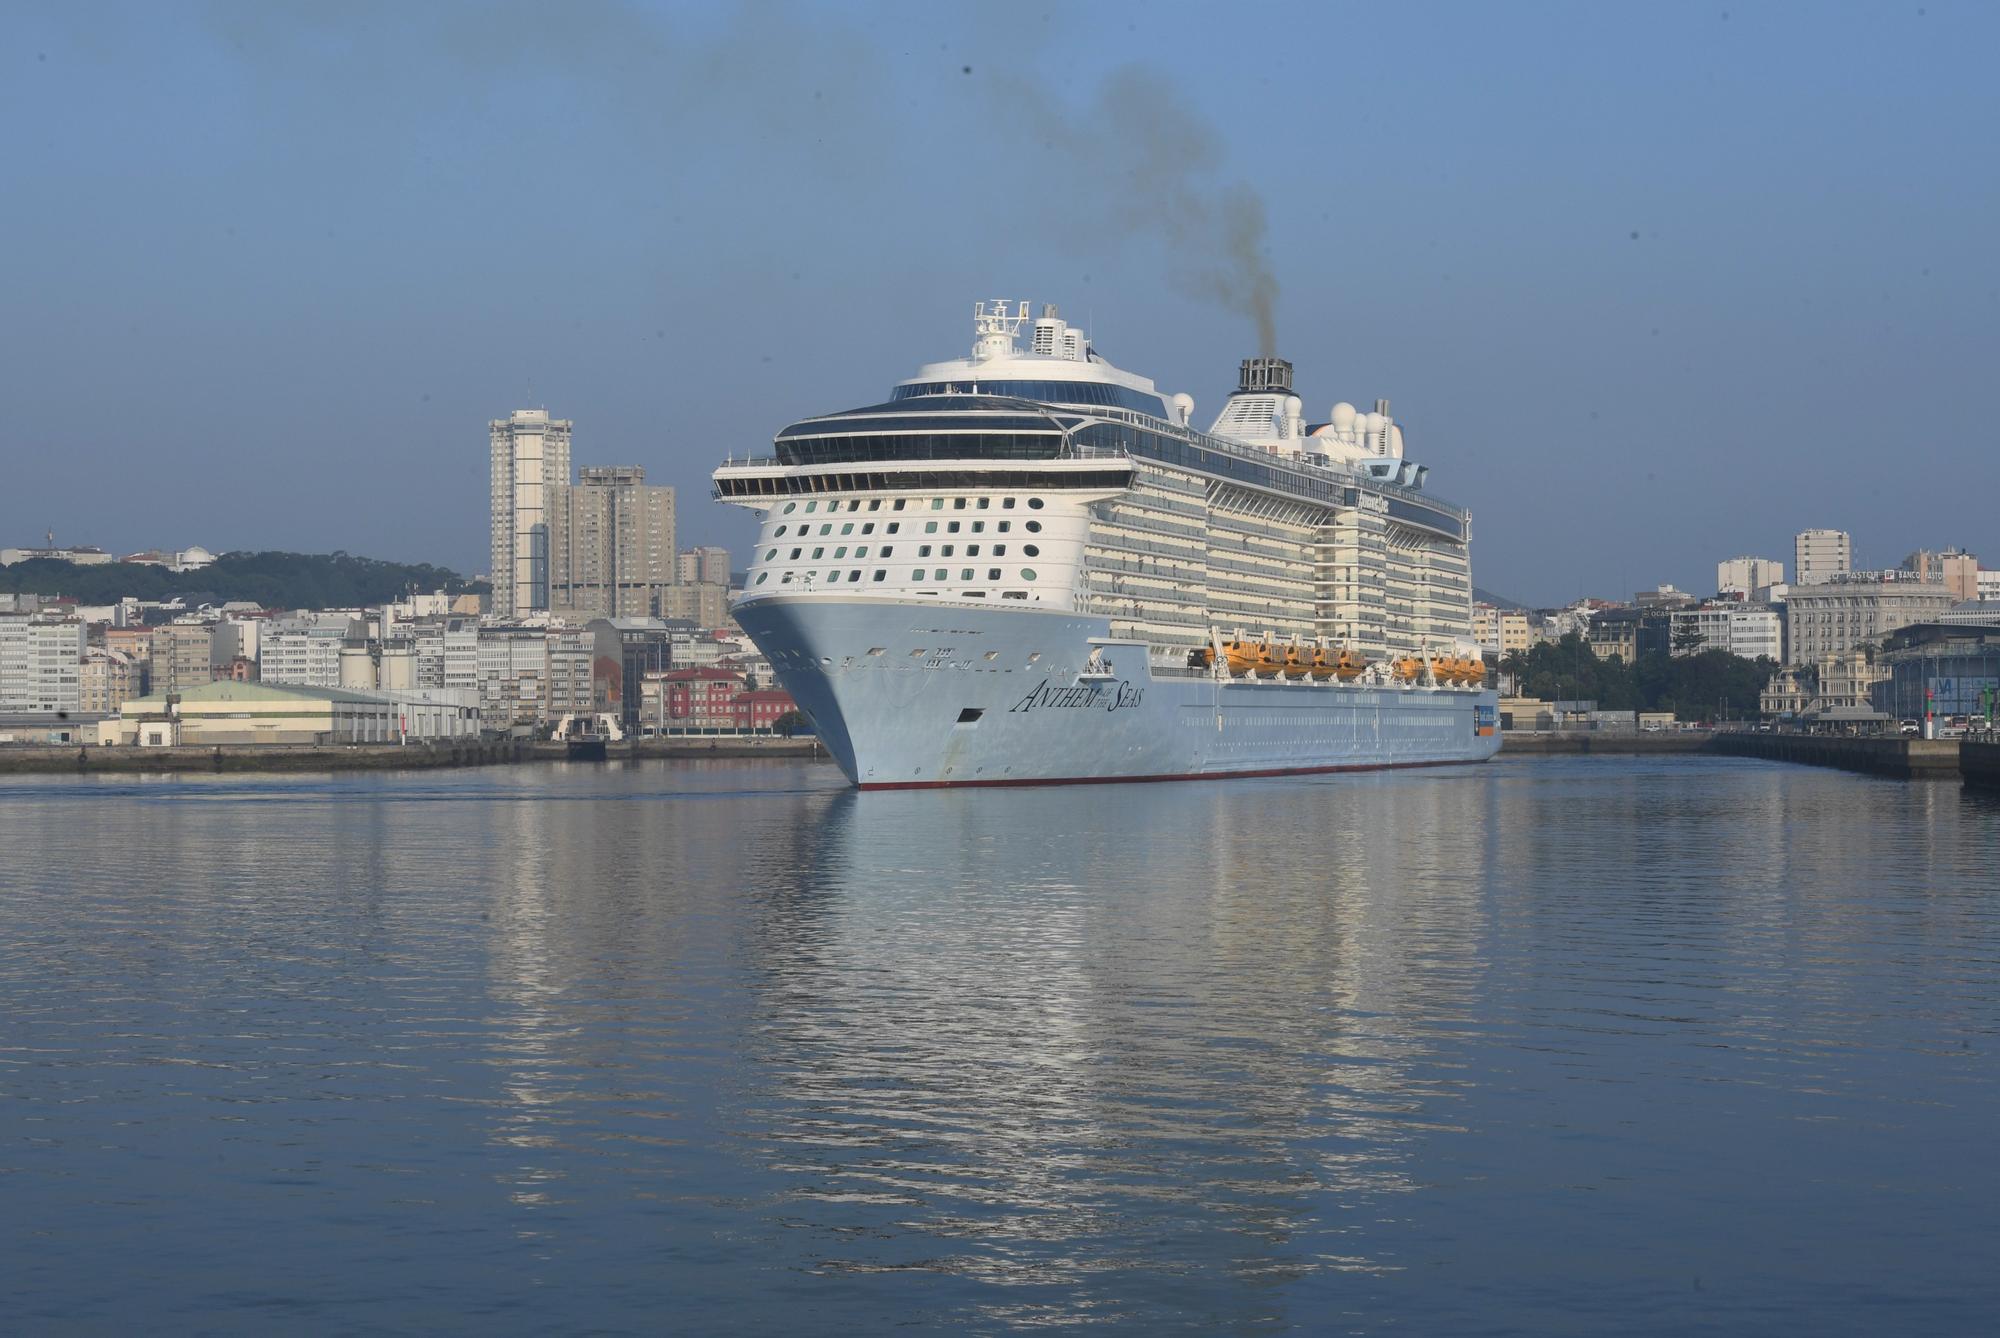 Llega al puerto de A Coruña uno de los cruceros más grandes del mundo